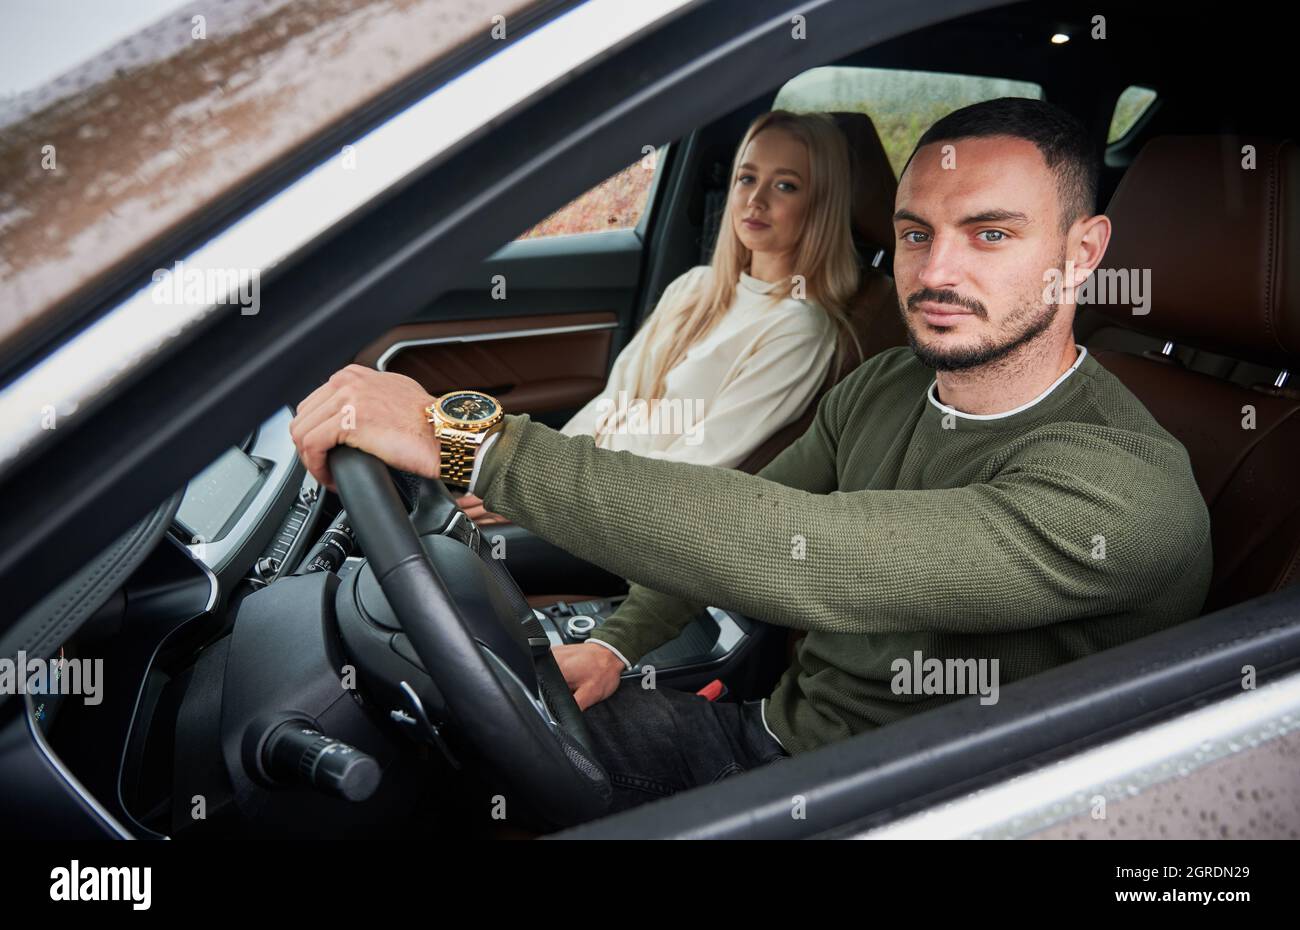 Portrait d'un conducteur homme sérieux et d'une belle femme passager sur le siège avant de la voiture. Jeune conducteur mettant sa main sur le volant, regardant dans la caméra par la vitre latérale abaissée. Banque D'Images